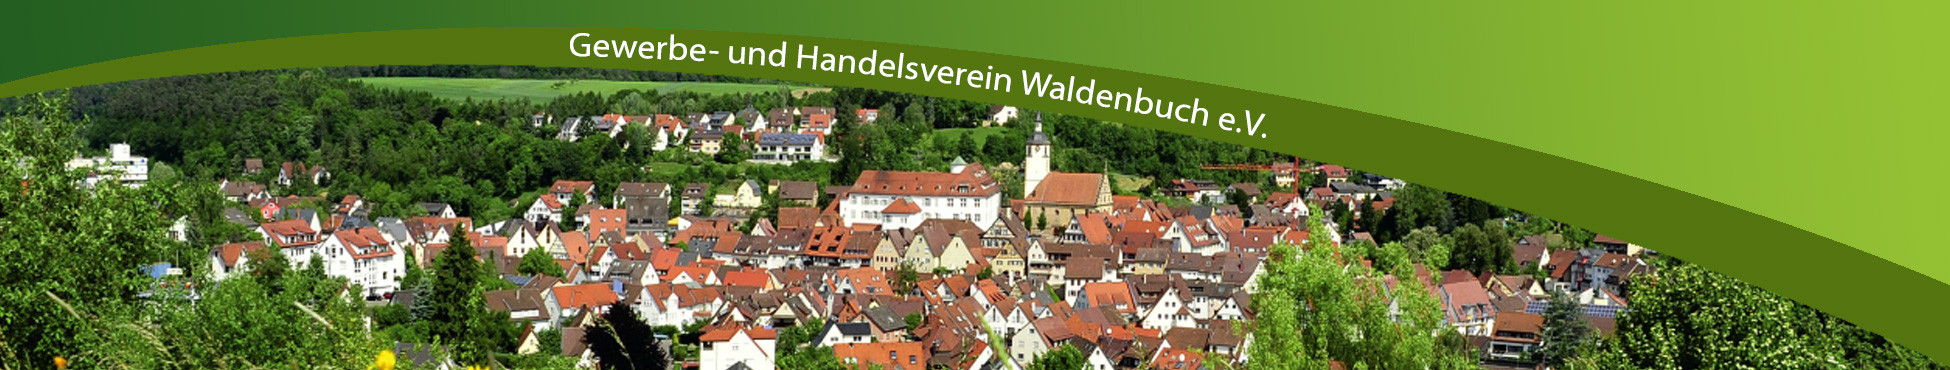 GHV-Header-Waldenbuch